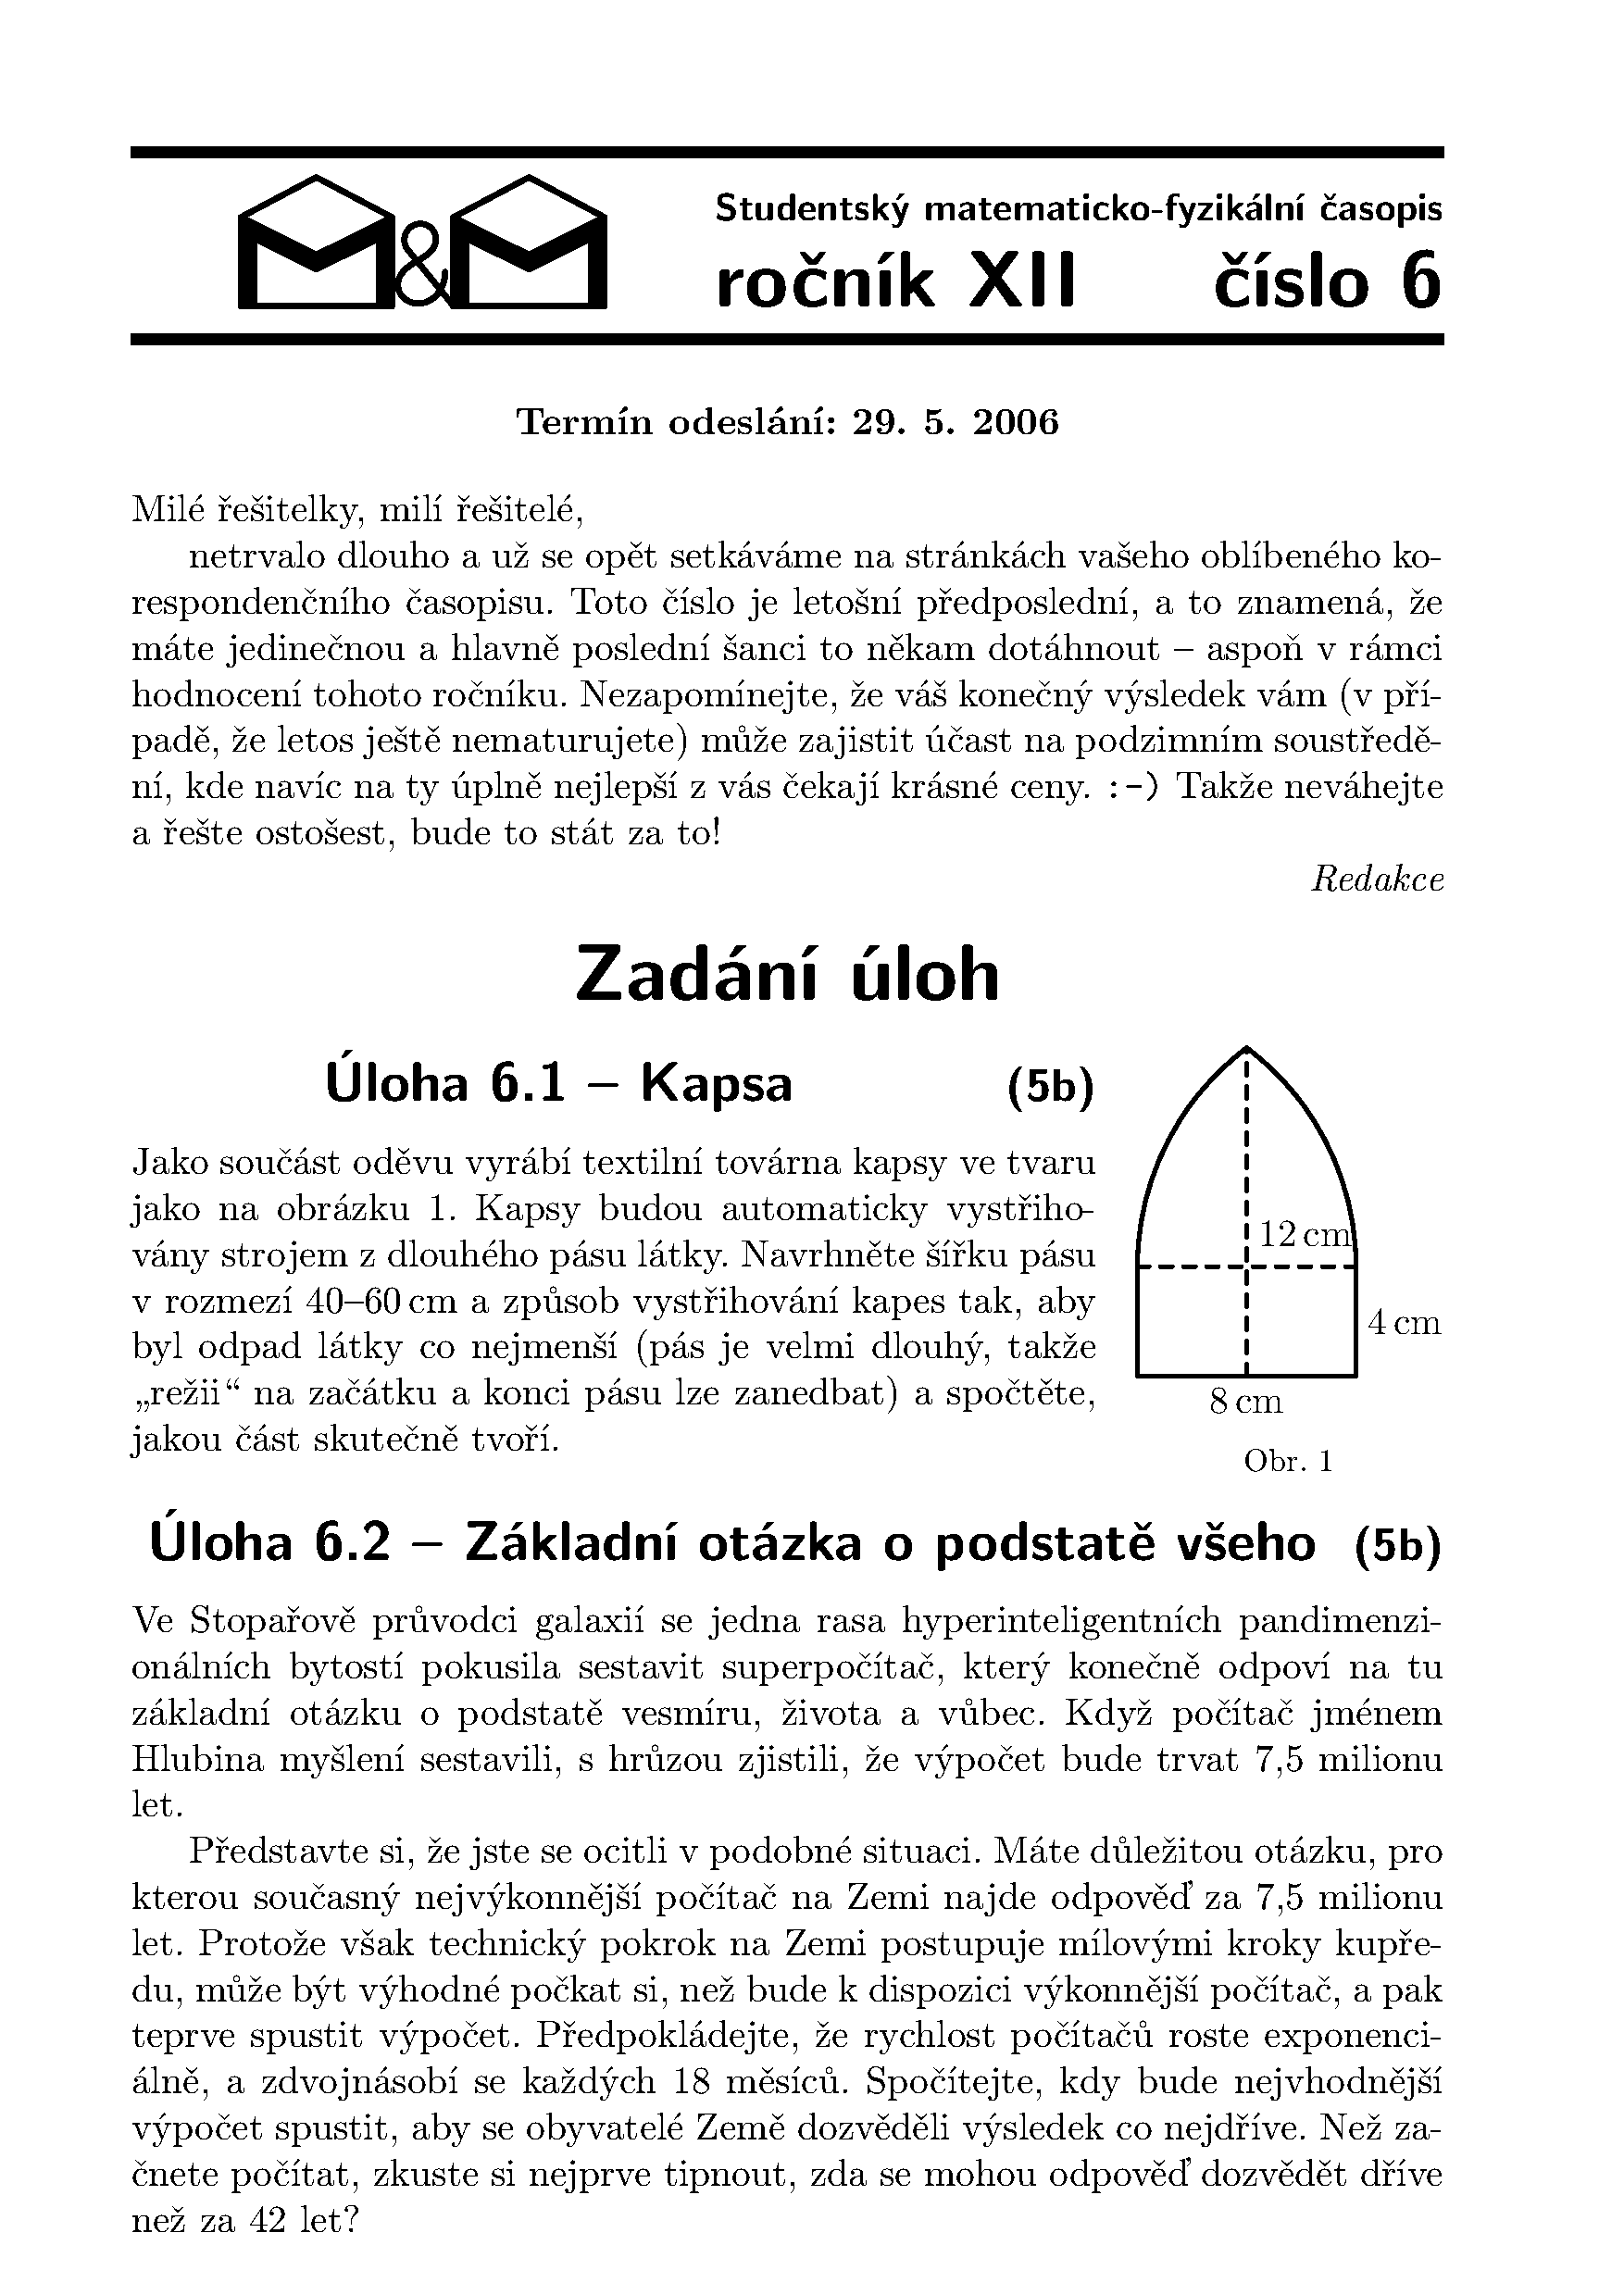 Titulní strana 6. čísla